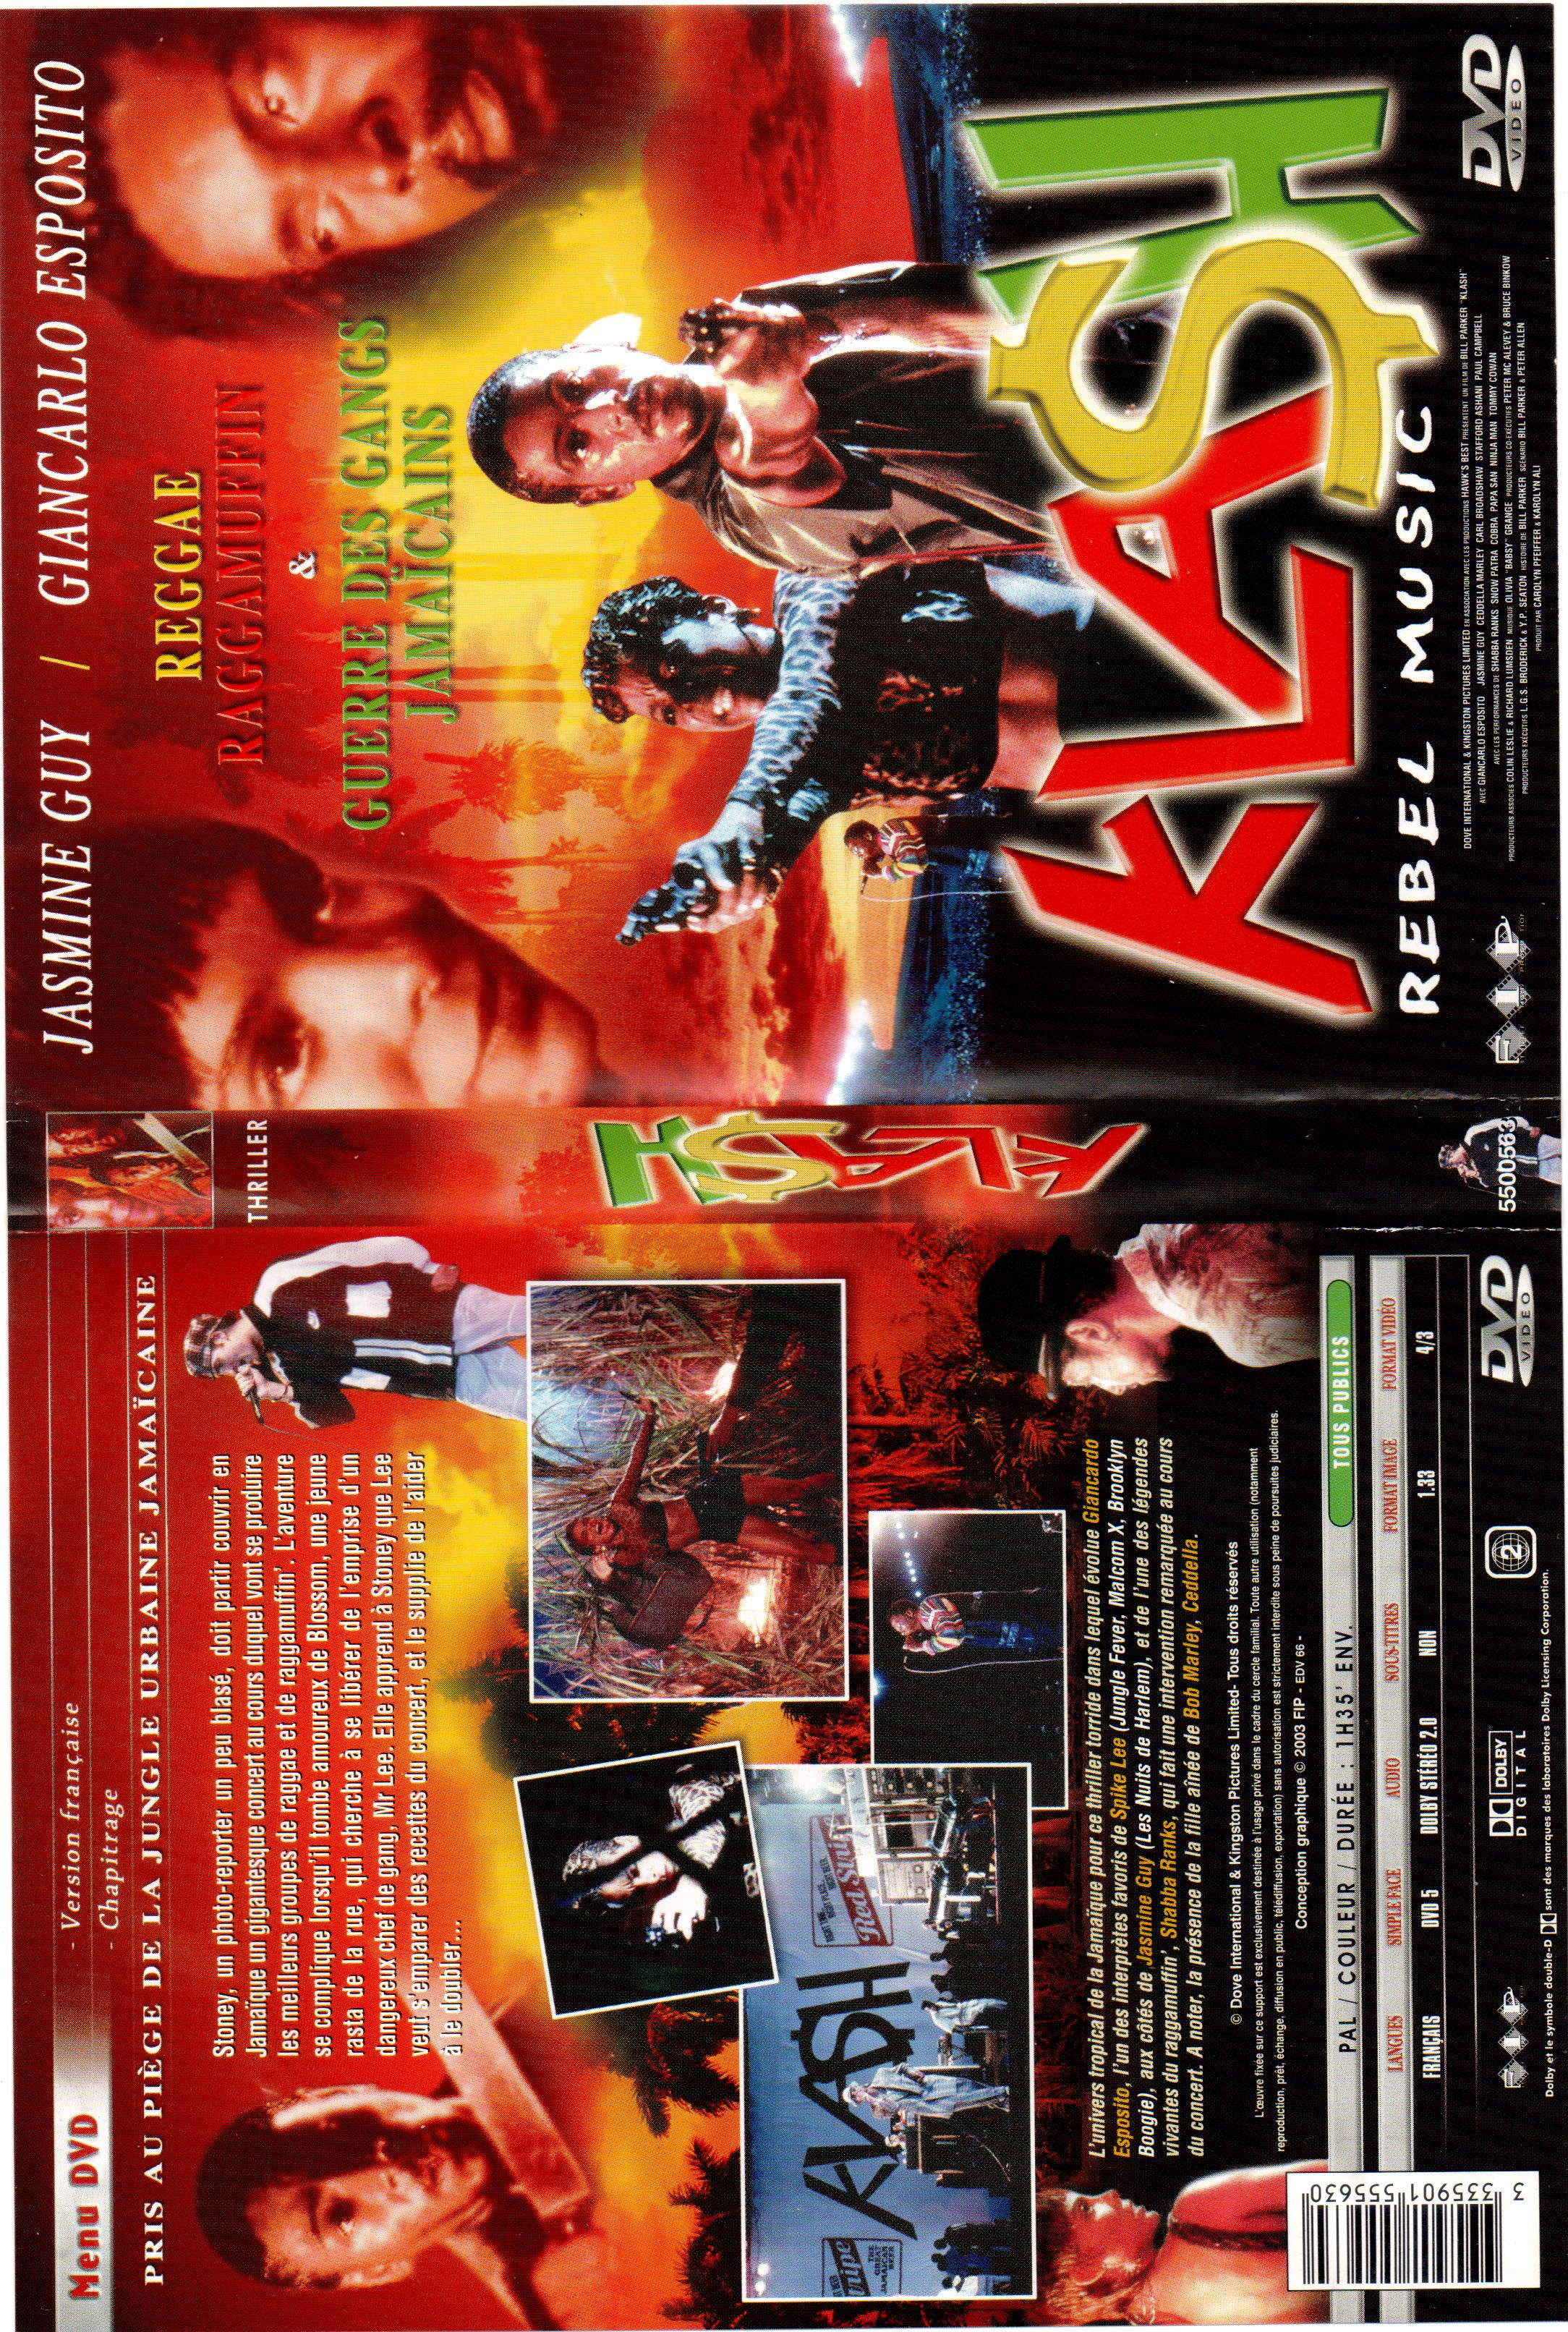 Jaquette DVD Klash